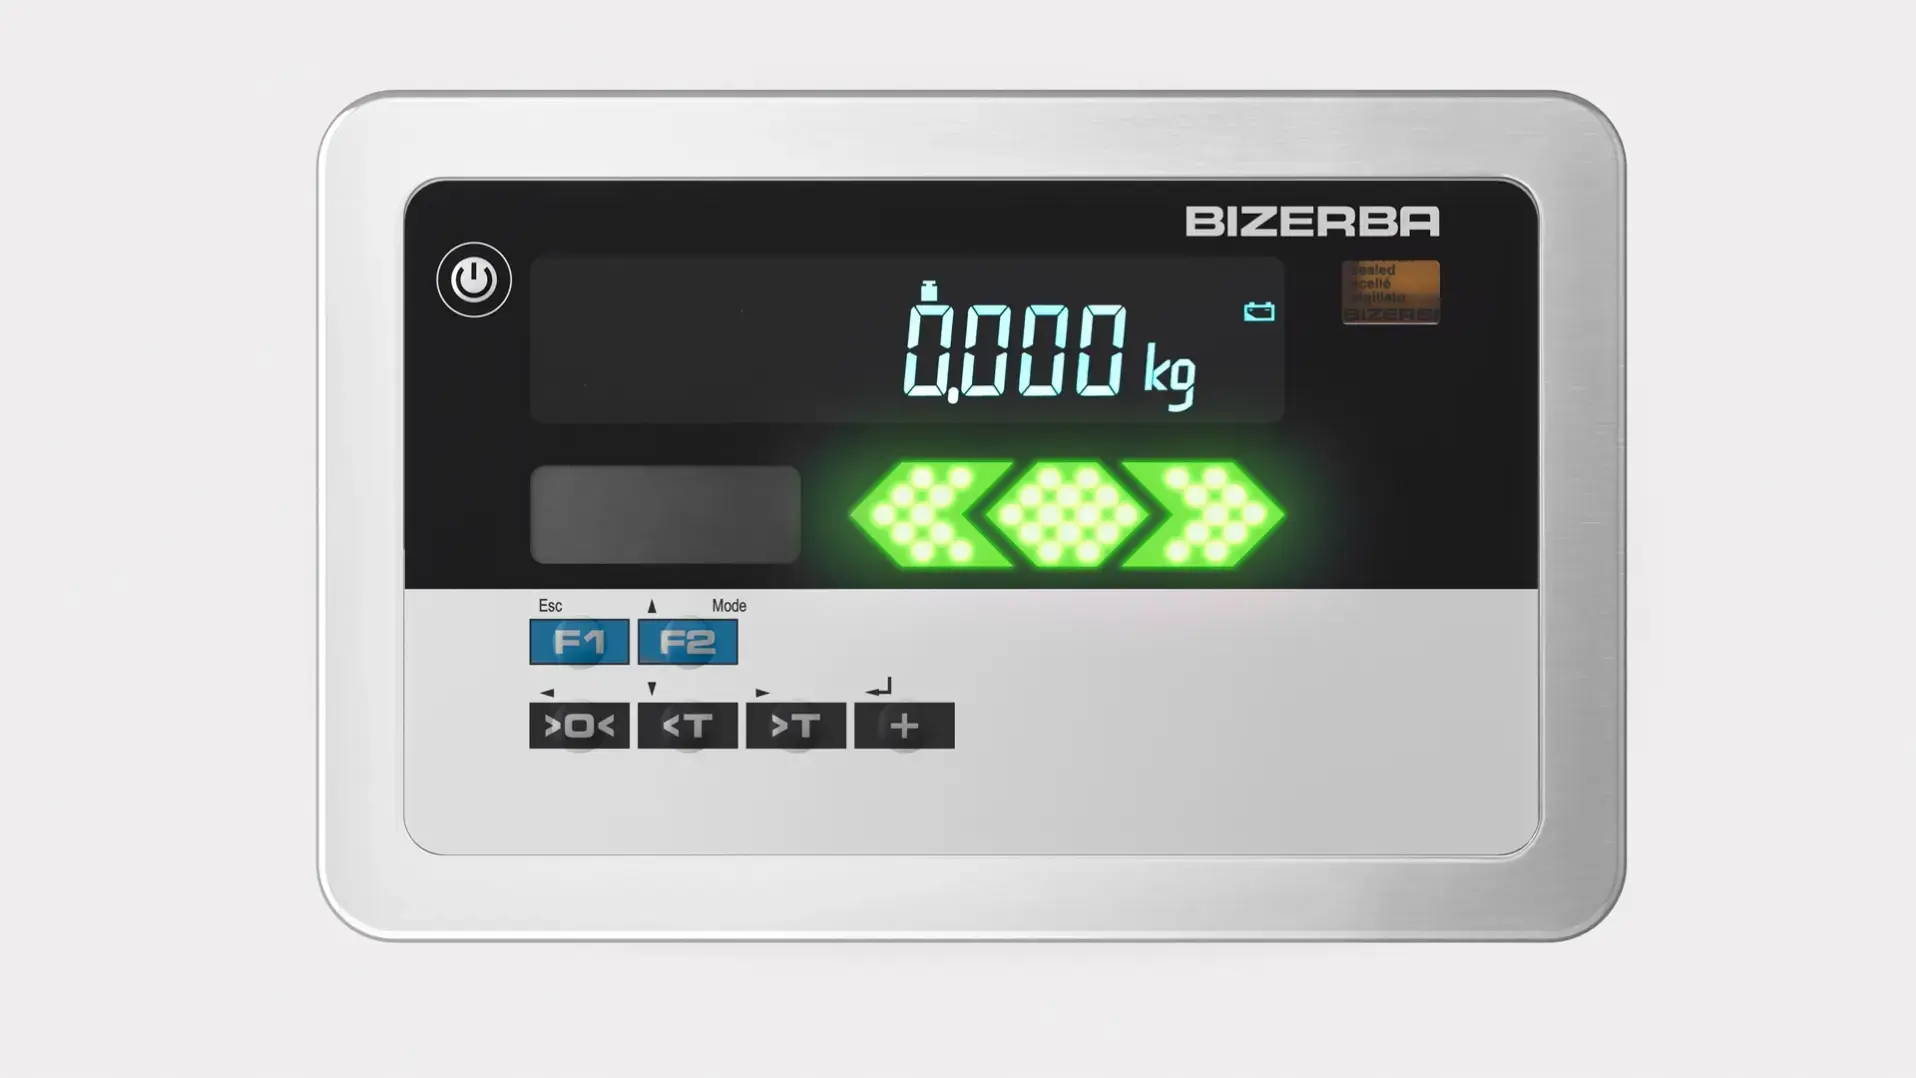 Промышленный весовой терминал is20 Bizerba. Весовой терминал tl200. Bizerba d72301 весовой терминал. Терминал весовой - BT-H-50. Токвес